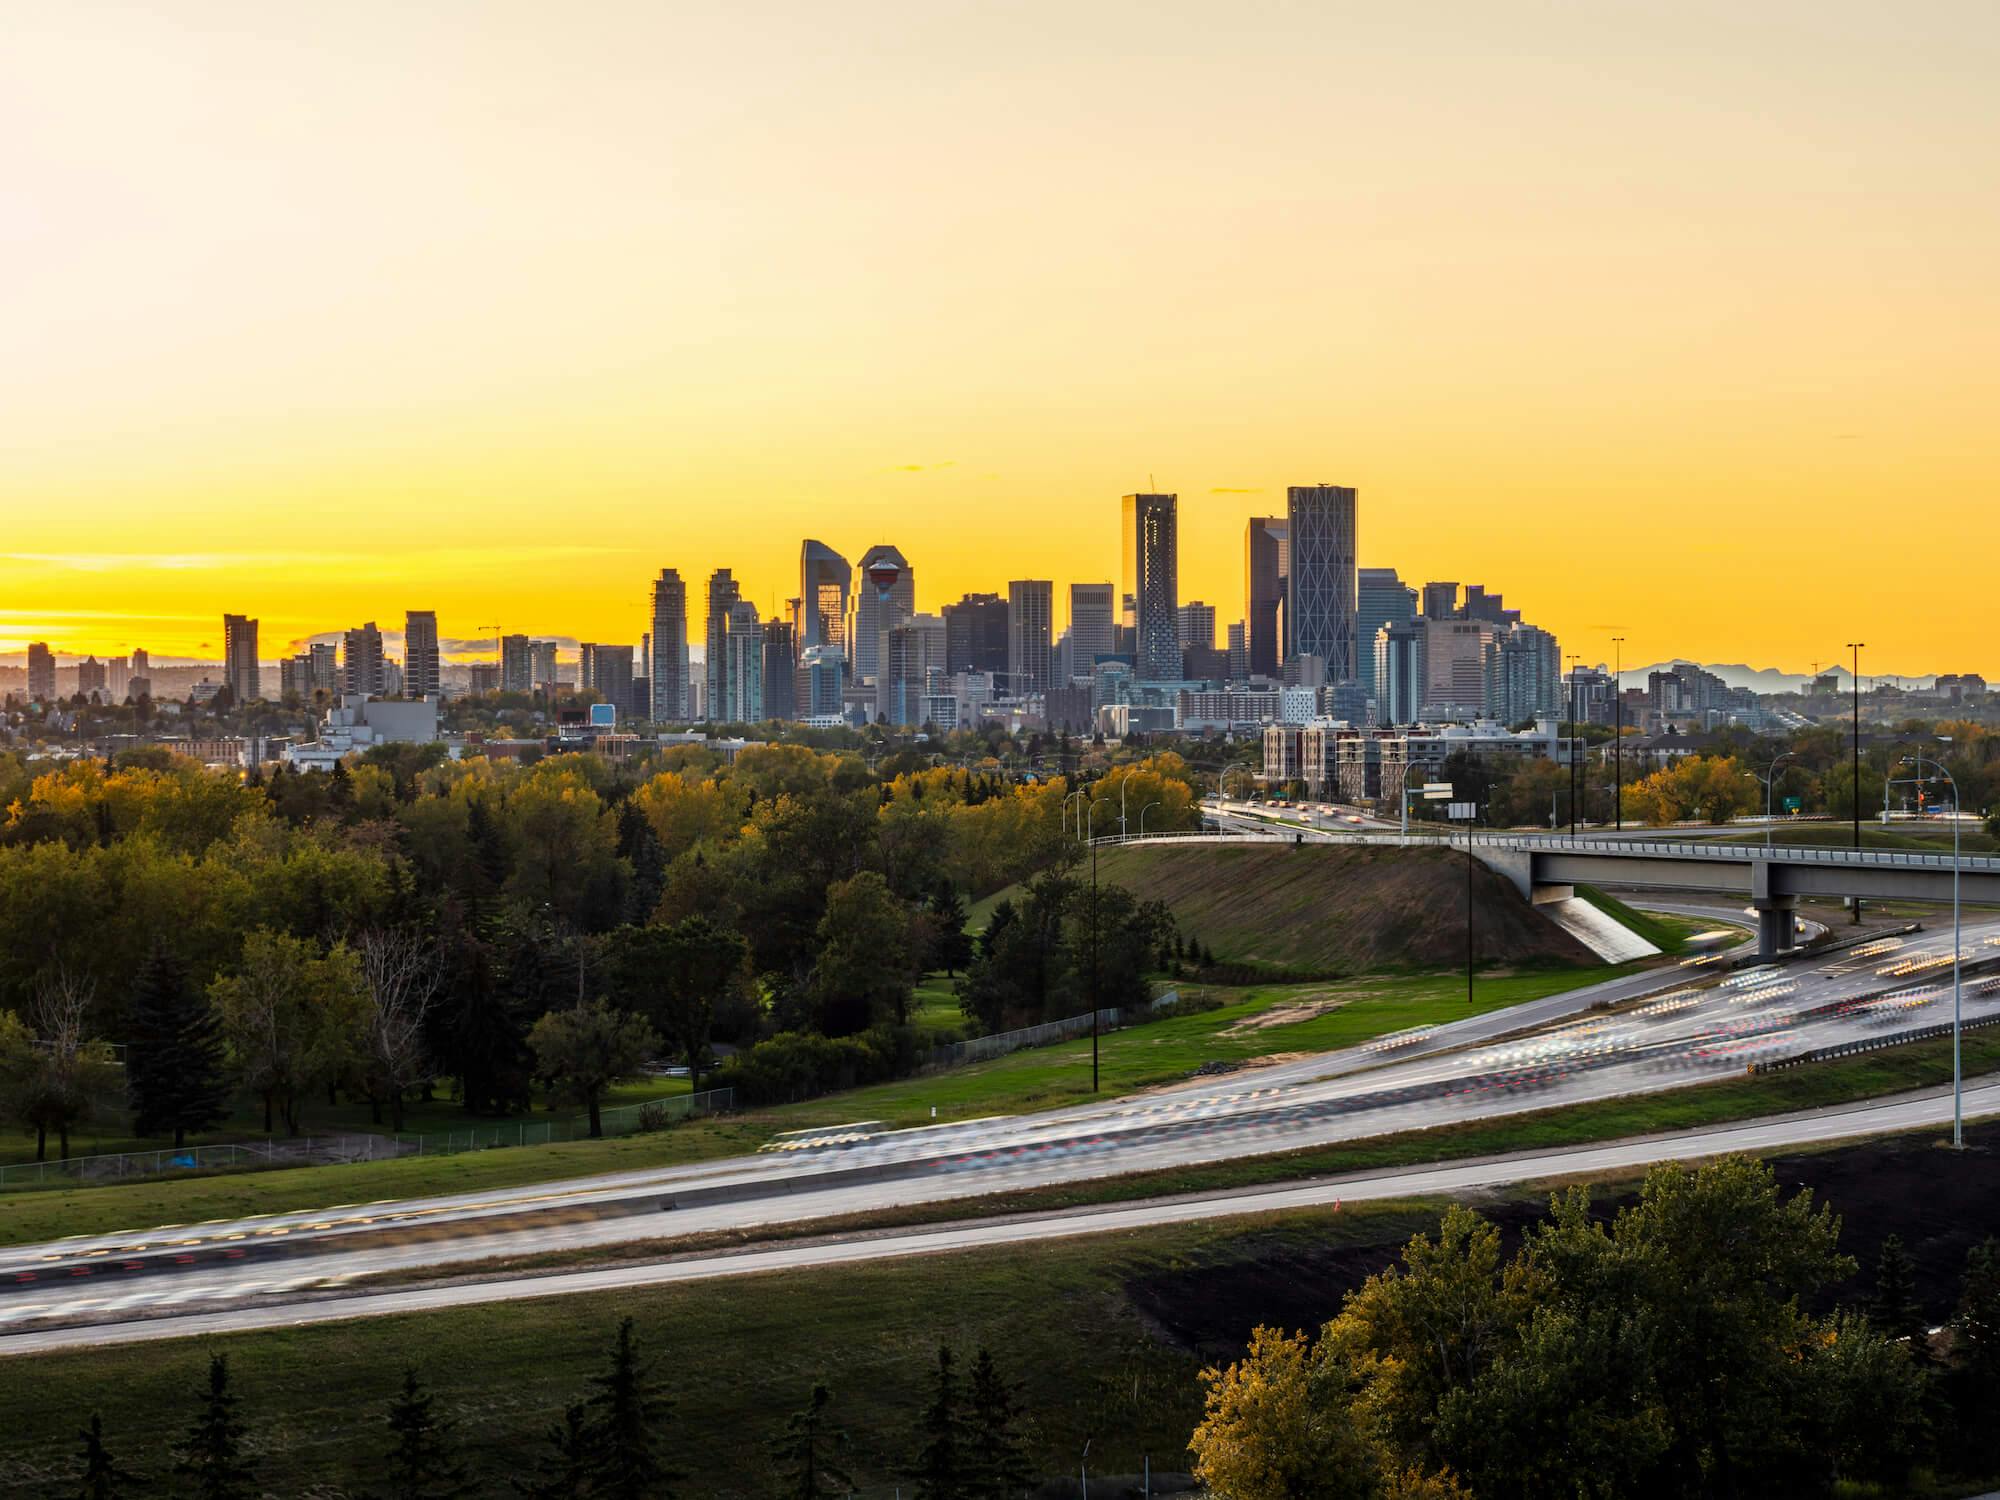 Calgary skyline against a yellow sky